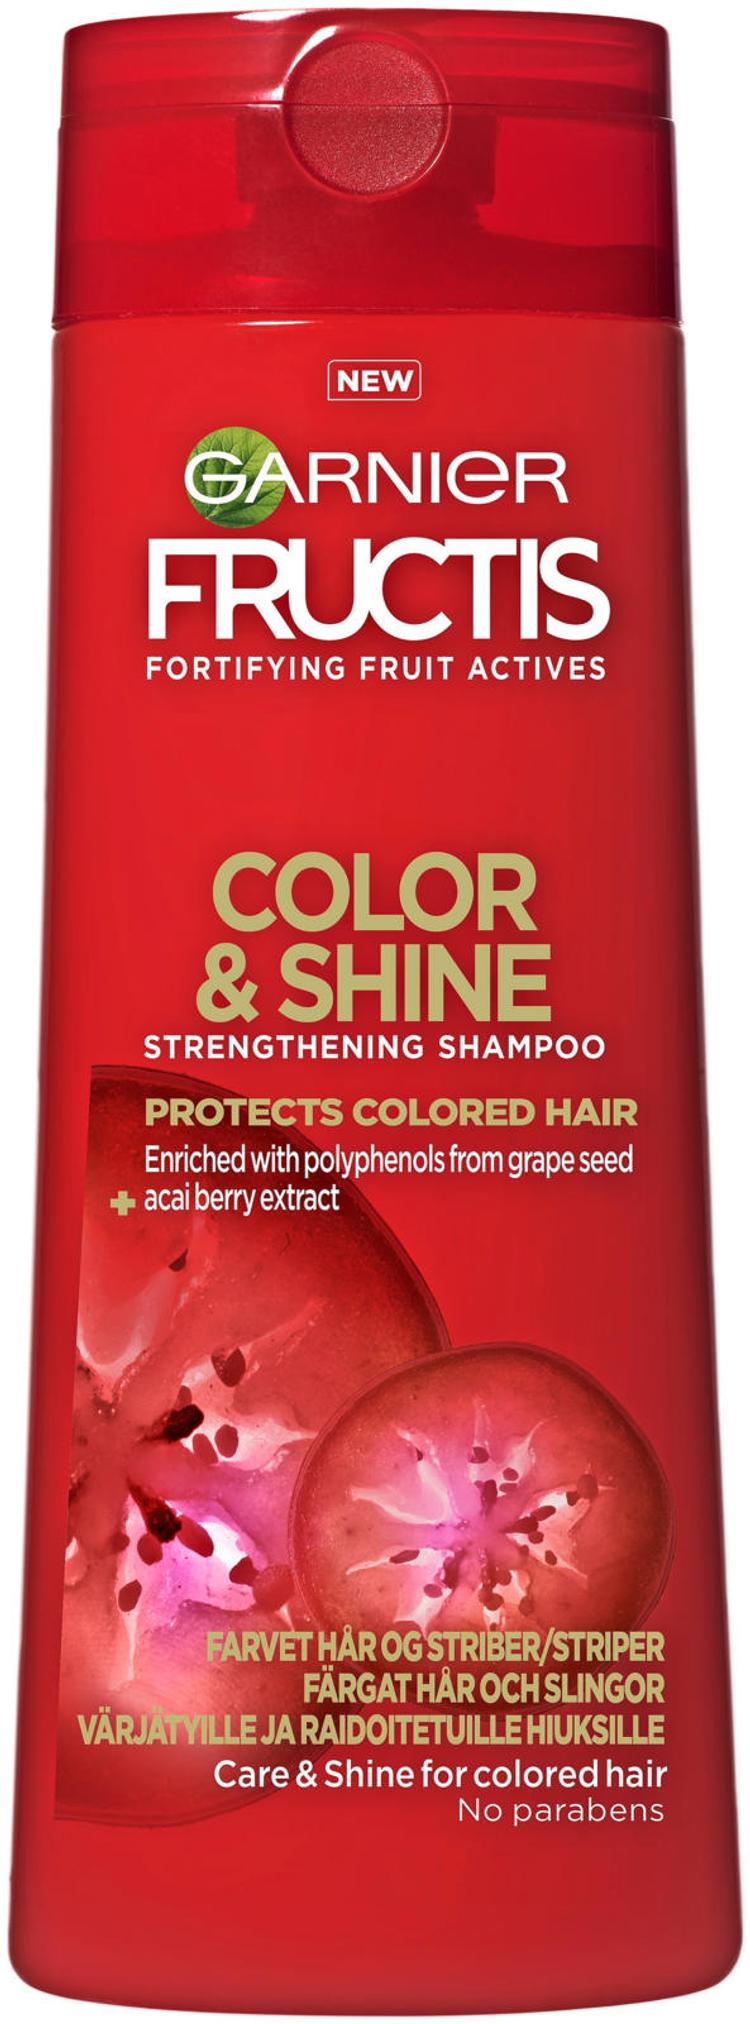 Garnier Fructis Color & Shine shampoo värjätyille ja raidoitetuille hiuksille 250ml